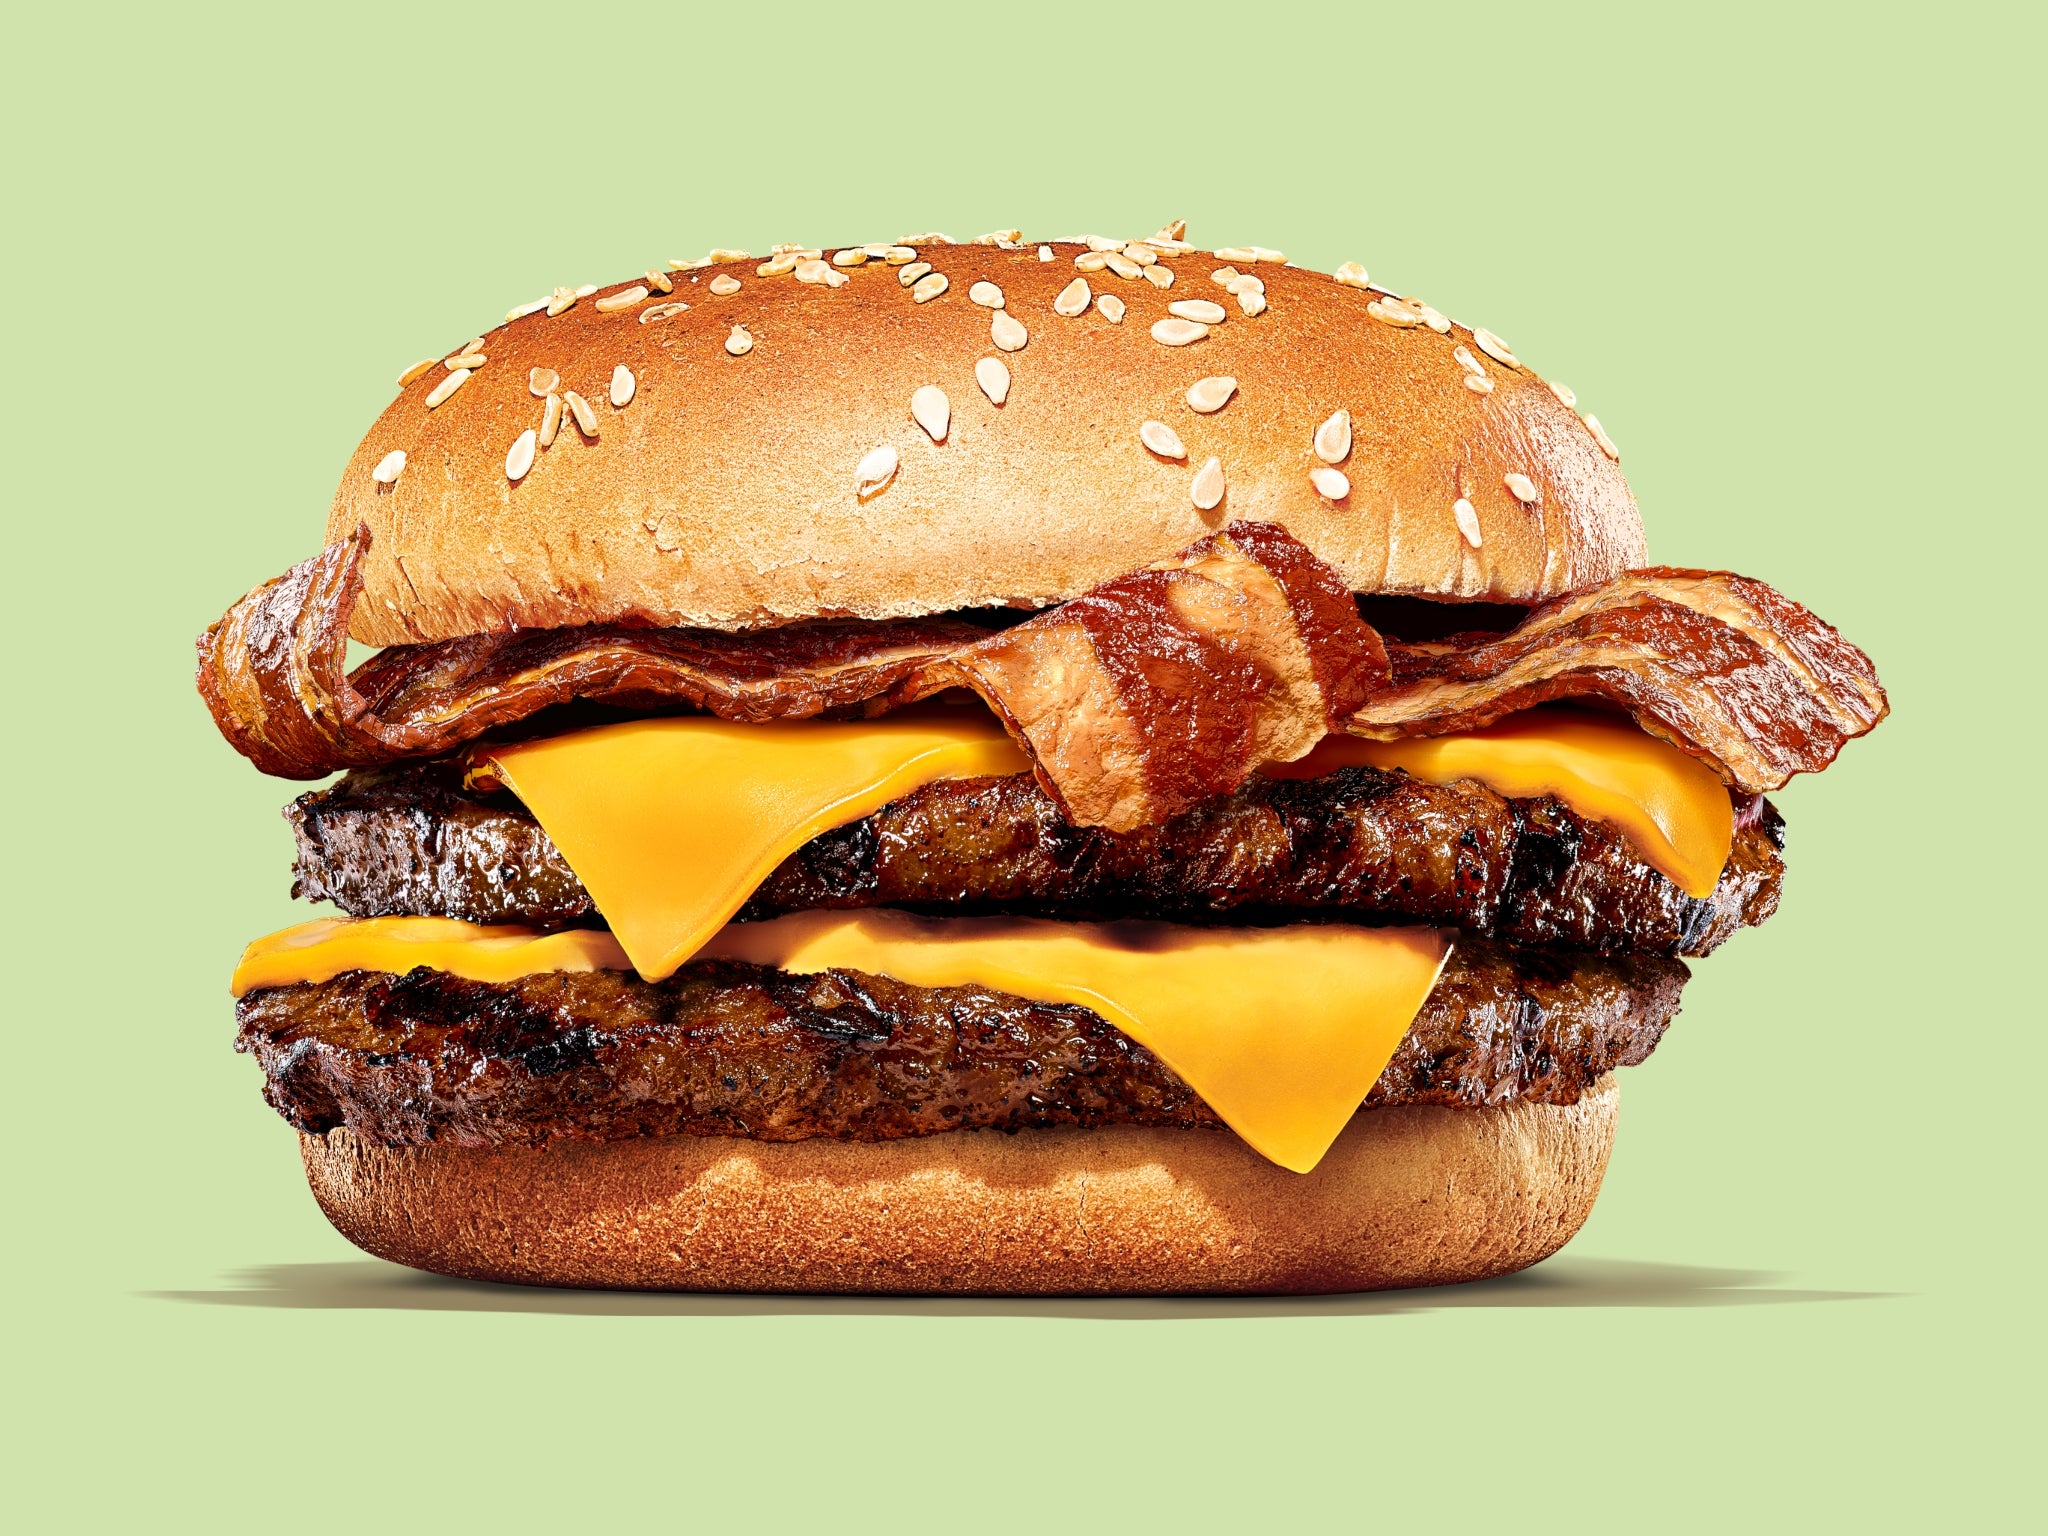 Burger King’s new Cheeeze and Bakon vegan burger